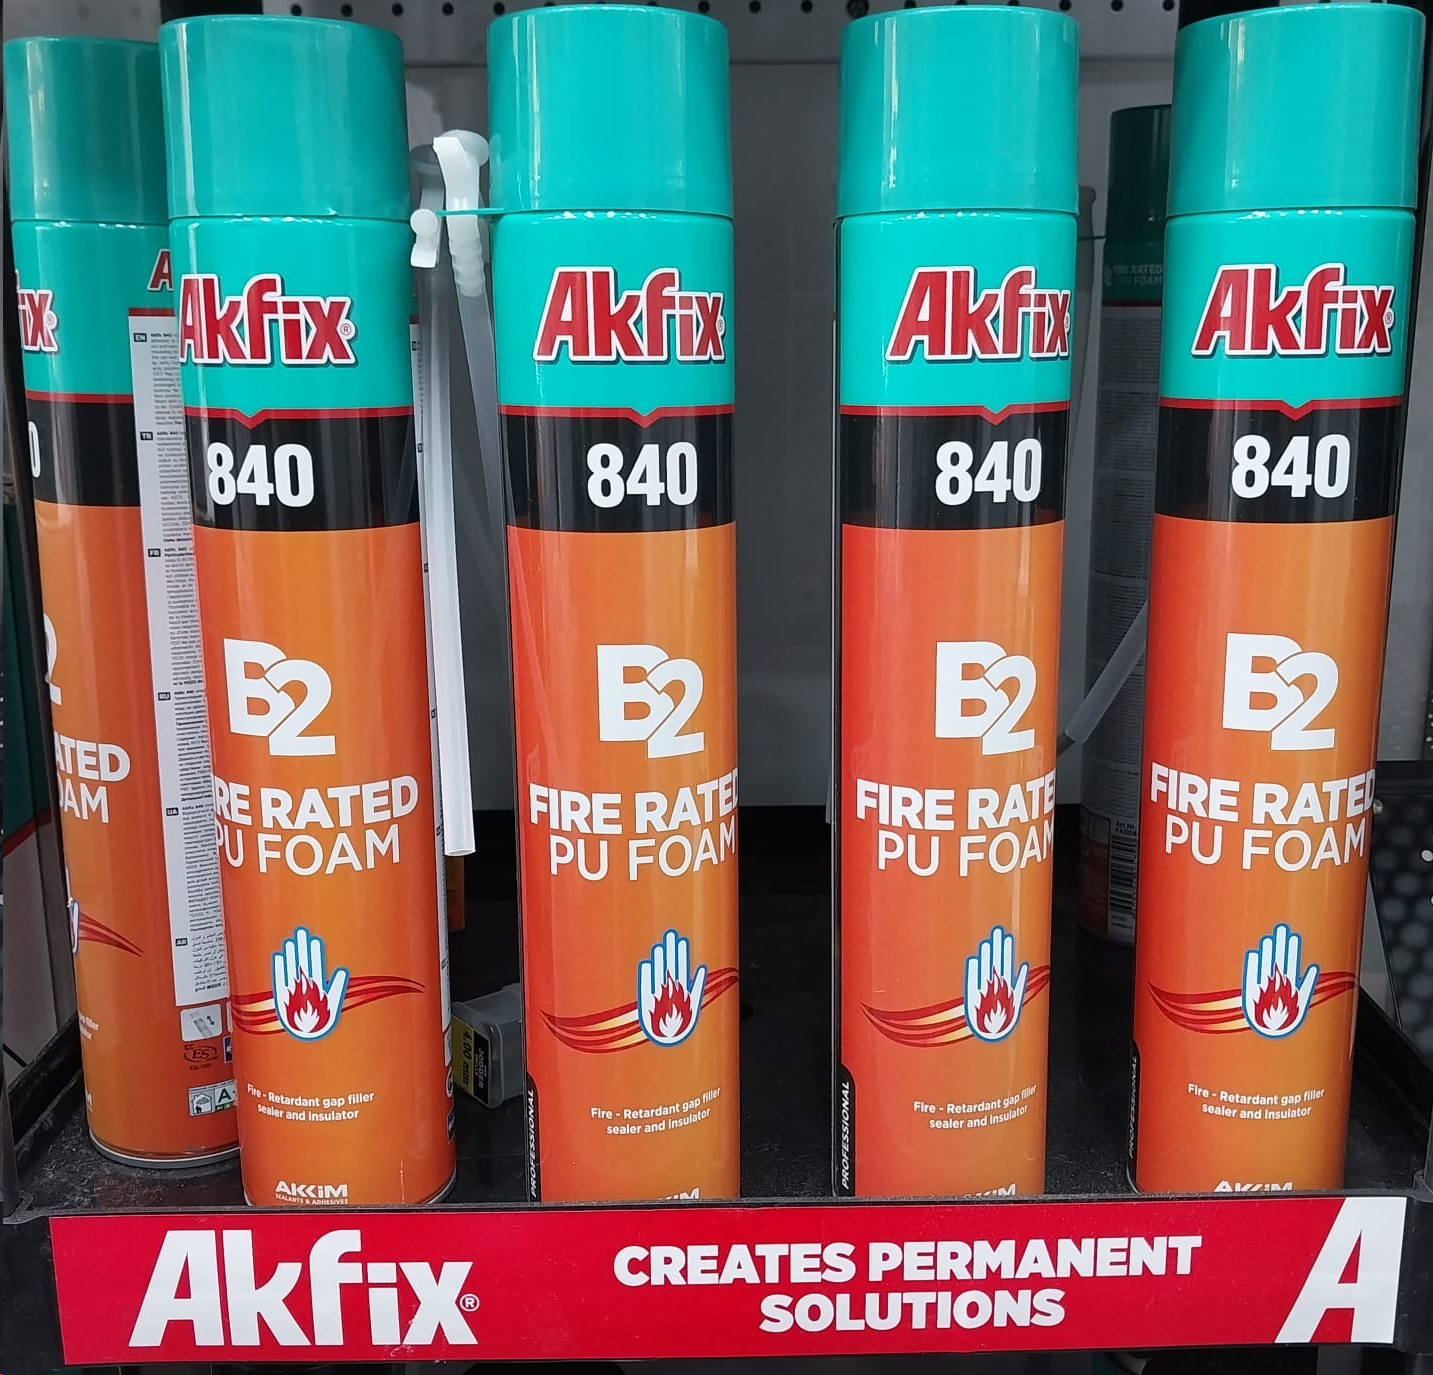 AKFIX 840 B2 PU FOAM FIRE RATED